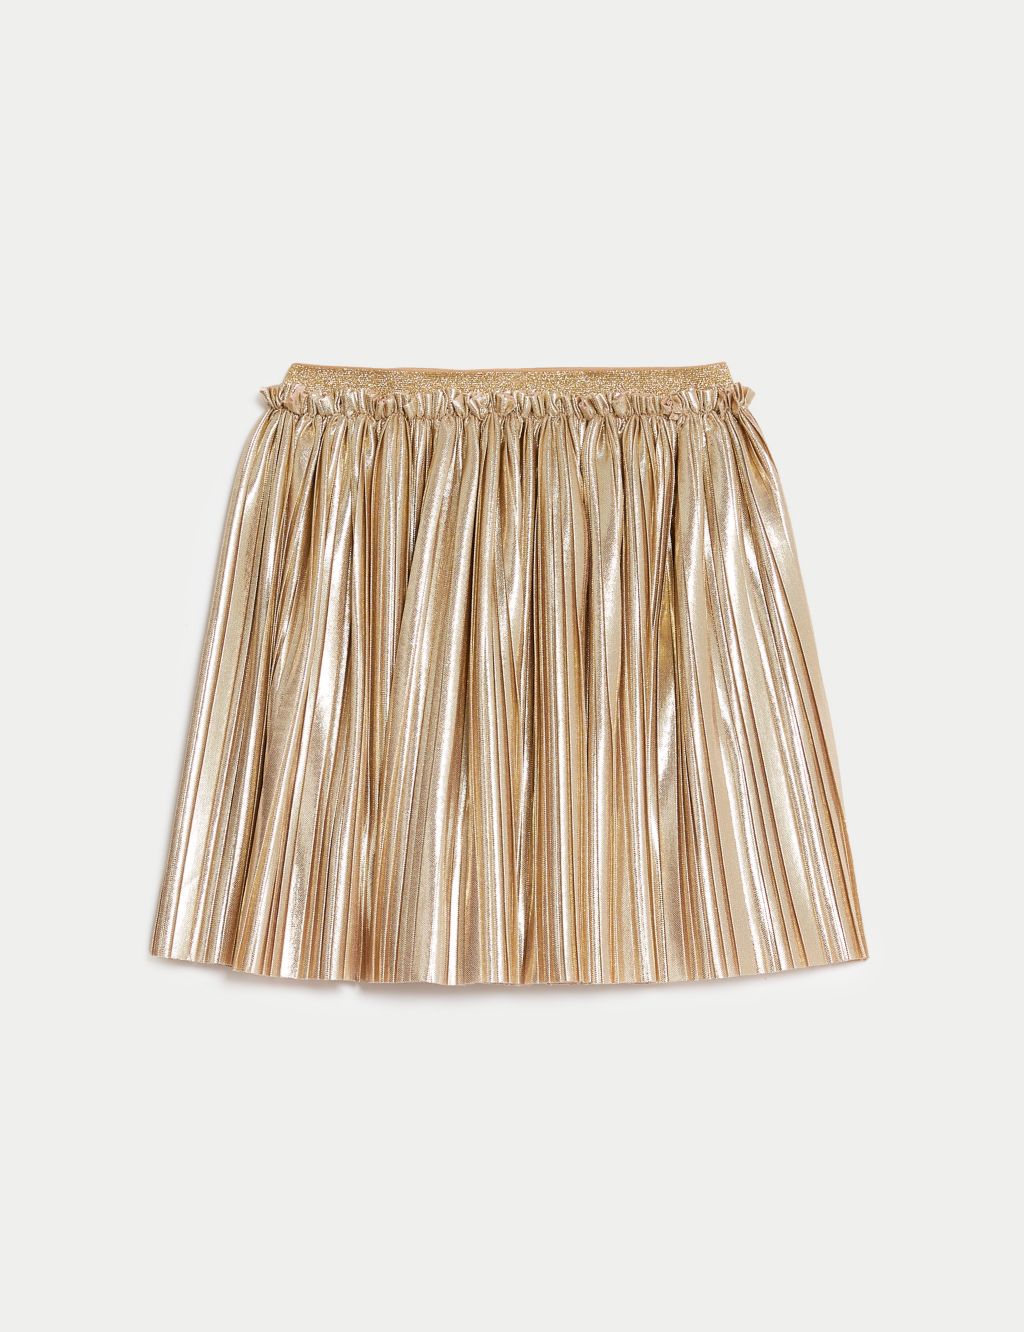 Plisse Metallic Skirt (2-8 Yrs) image 2